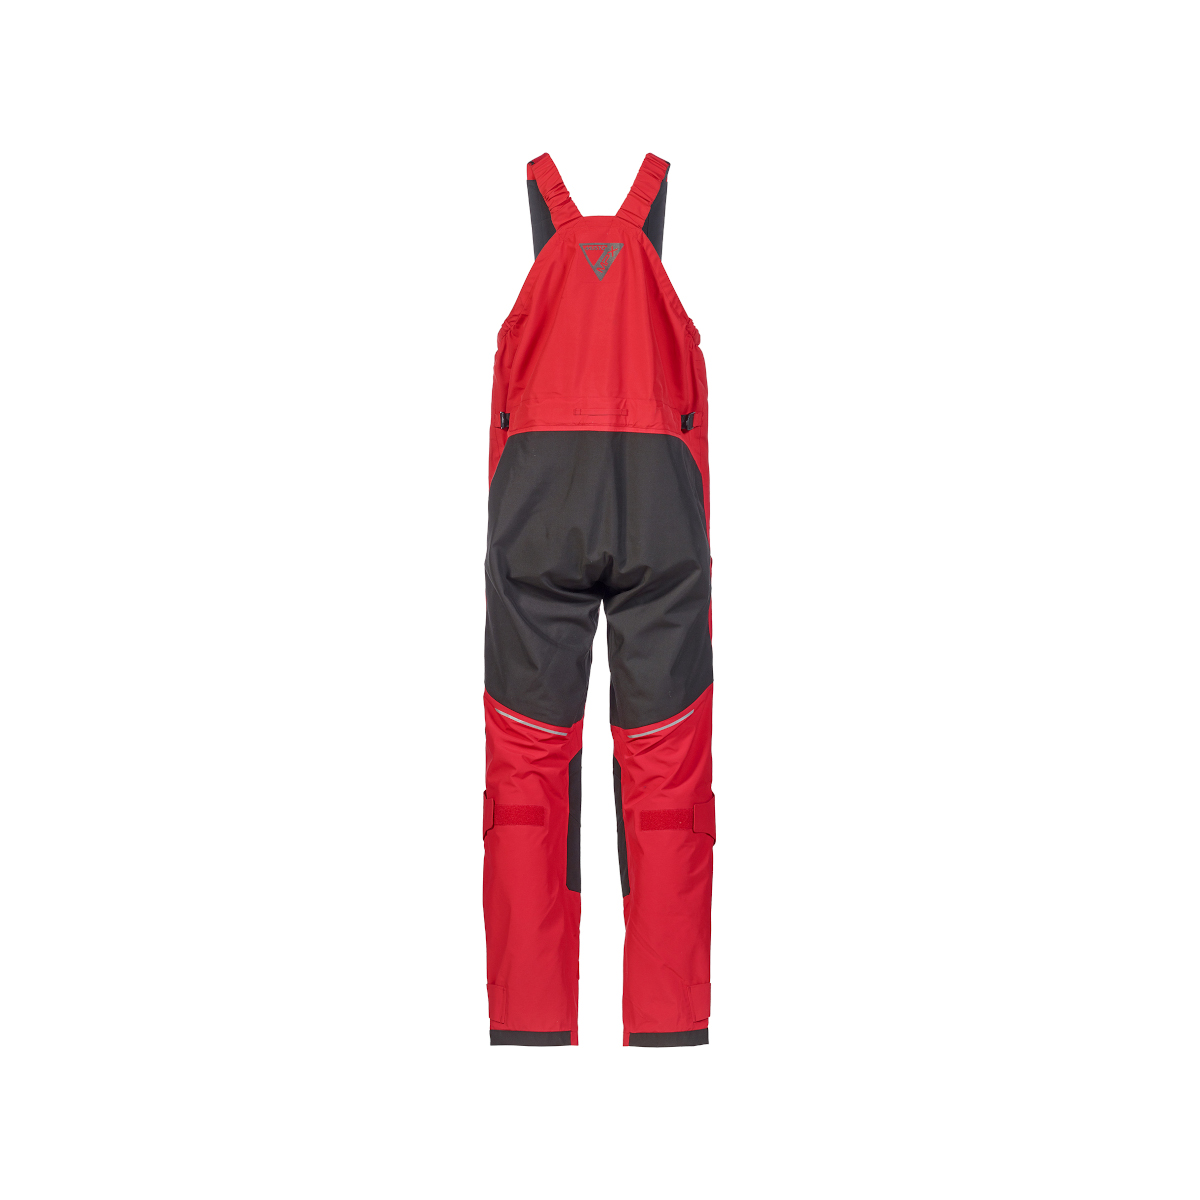 Musto MPX Gore-Tex Pro Offshore 2.0 pantalon de voile homme rouge, taille M